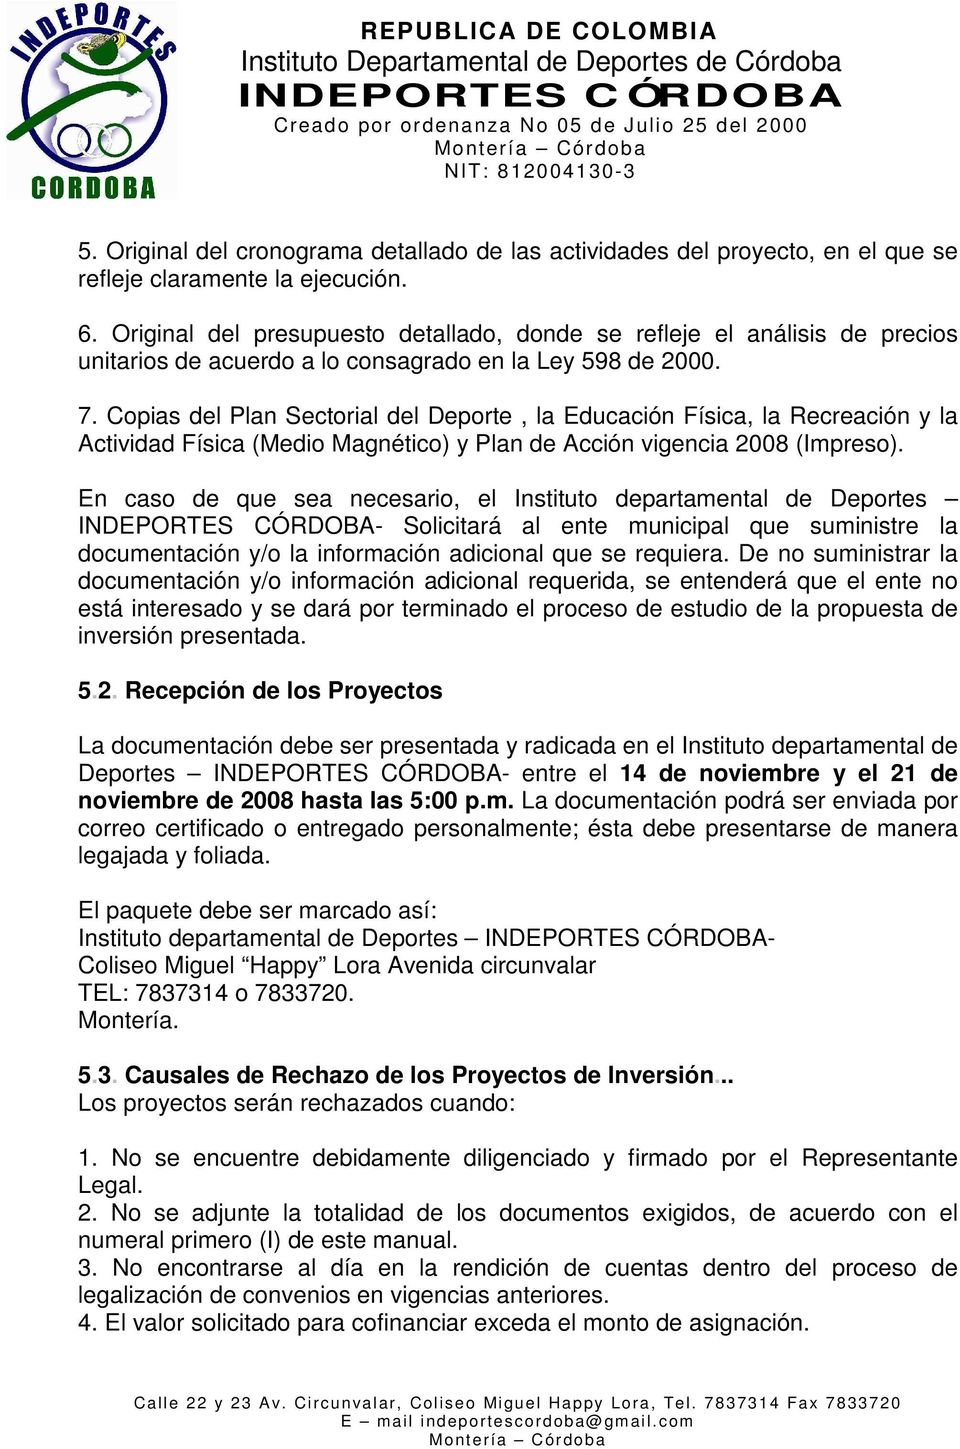 Copias del Plan Sectorial del Deporte, la Educación Física, la Recreación y la Actividad Física (Medio Magnético) y Plan de Acción vigencia 2008 (Impreso).